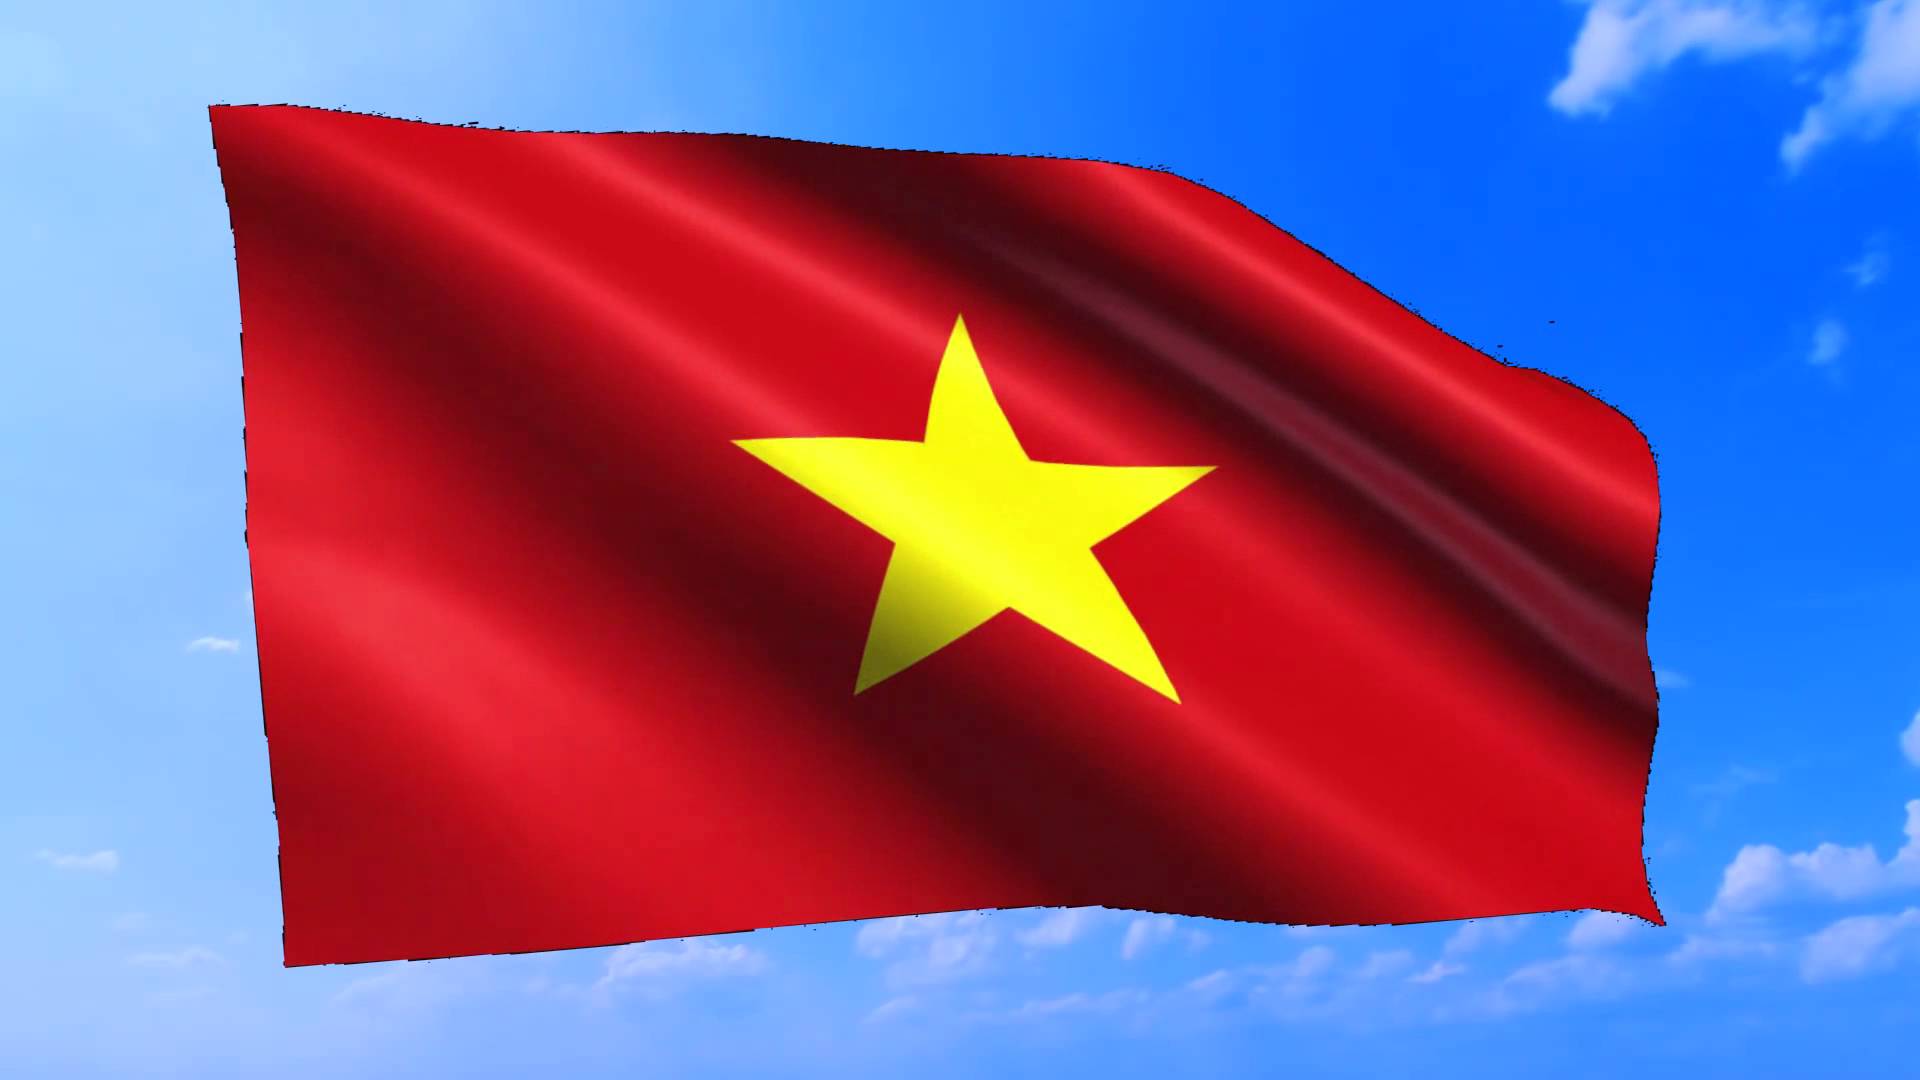 Hình lá cờ Việt Nam ảnh quốc kỳ đẹp, rõ, sắc nét-6